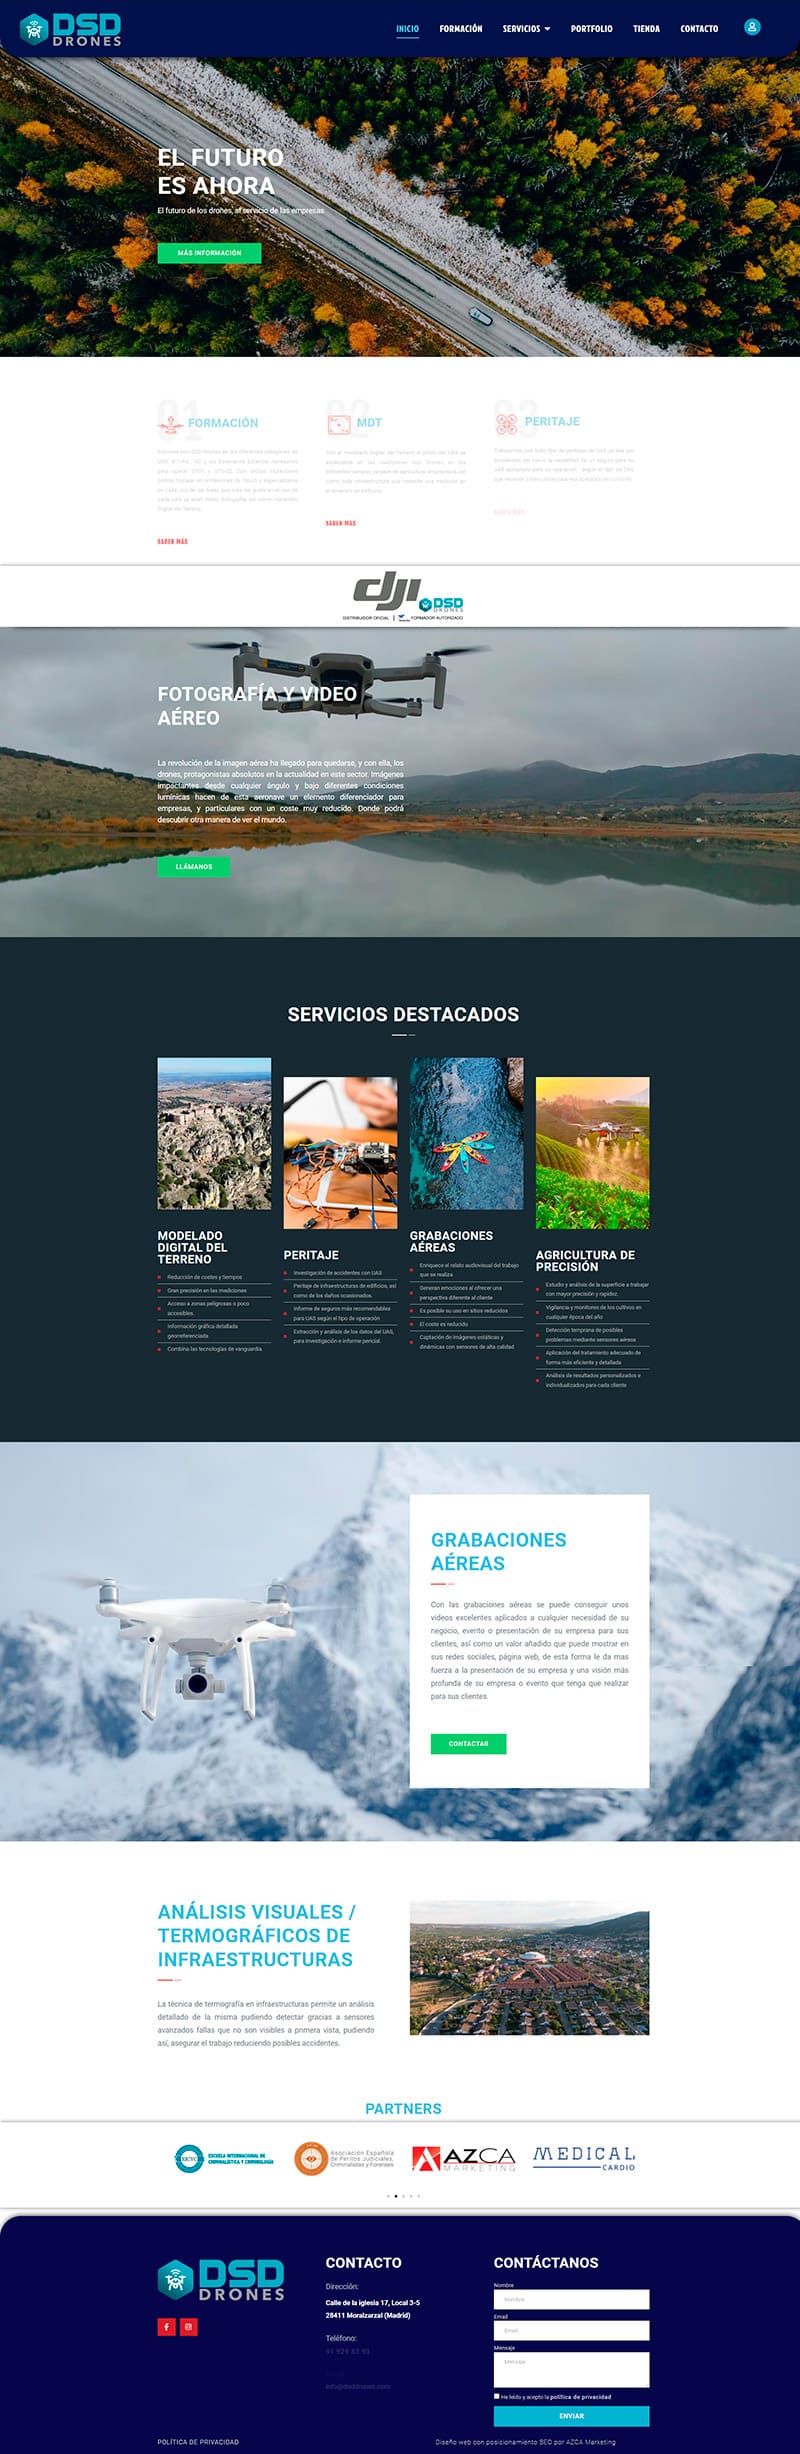 dsd drones diseño web y posicionamiento seo